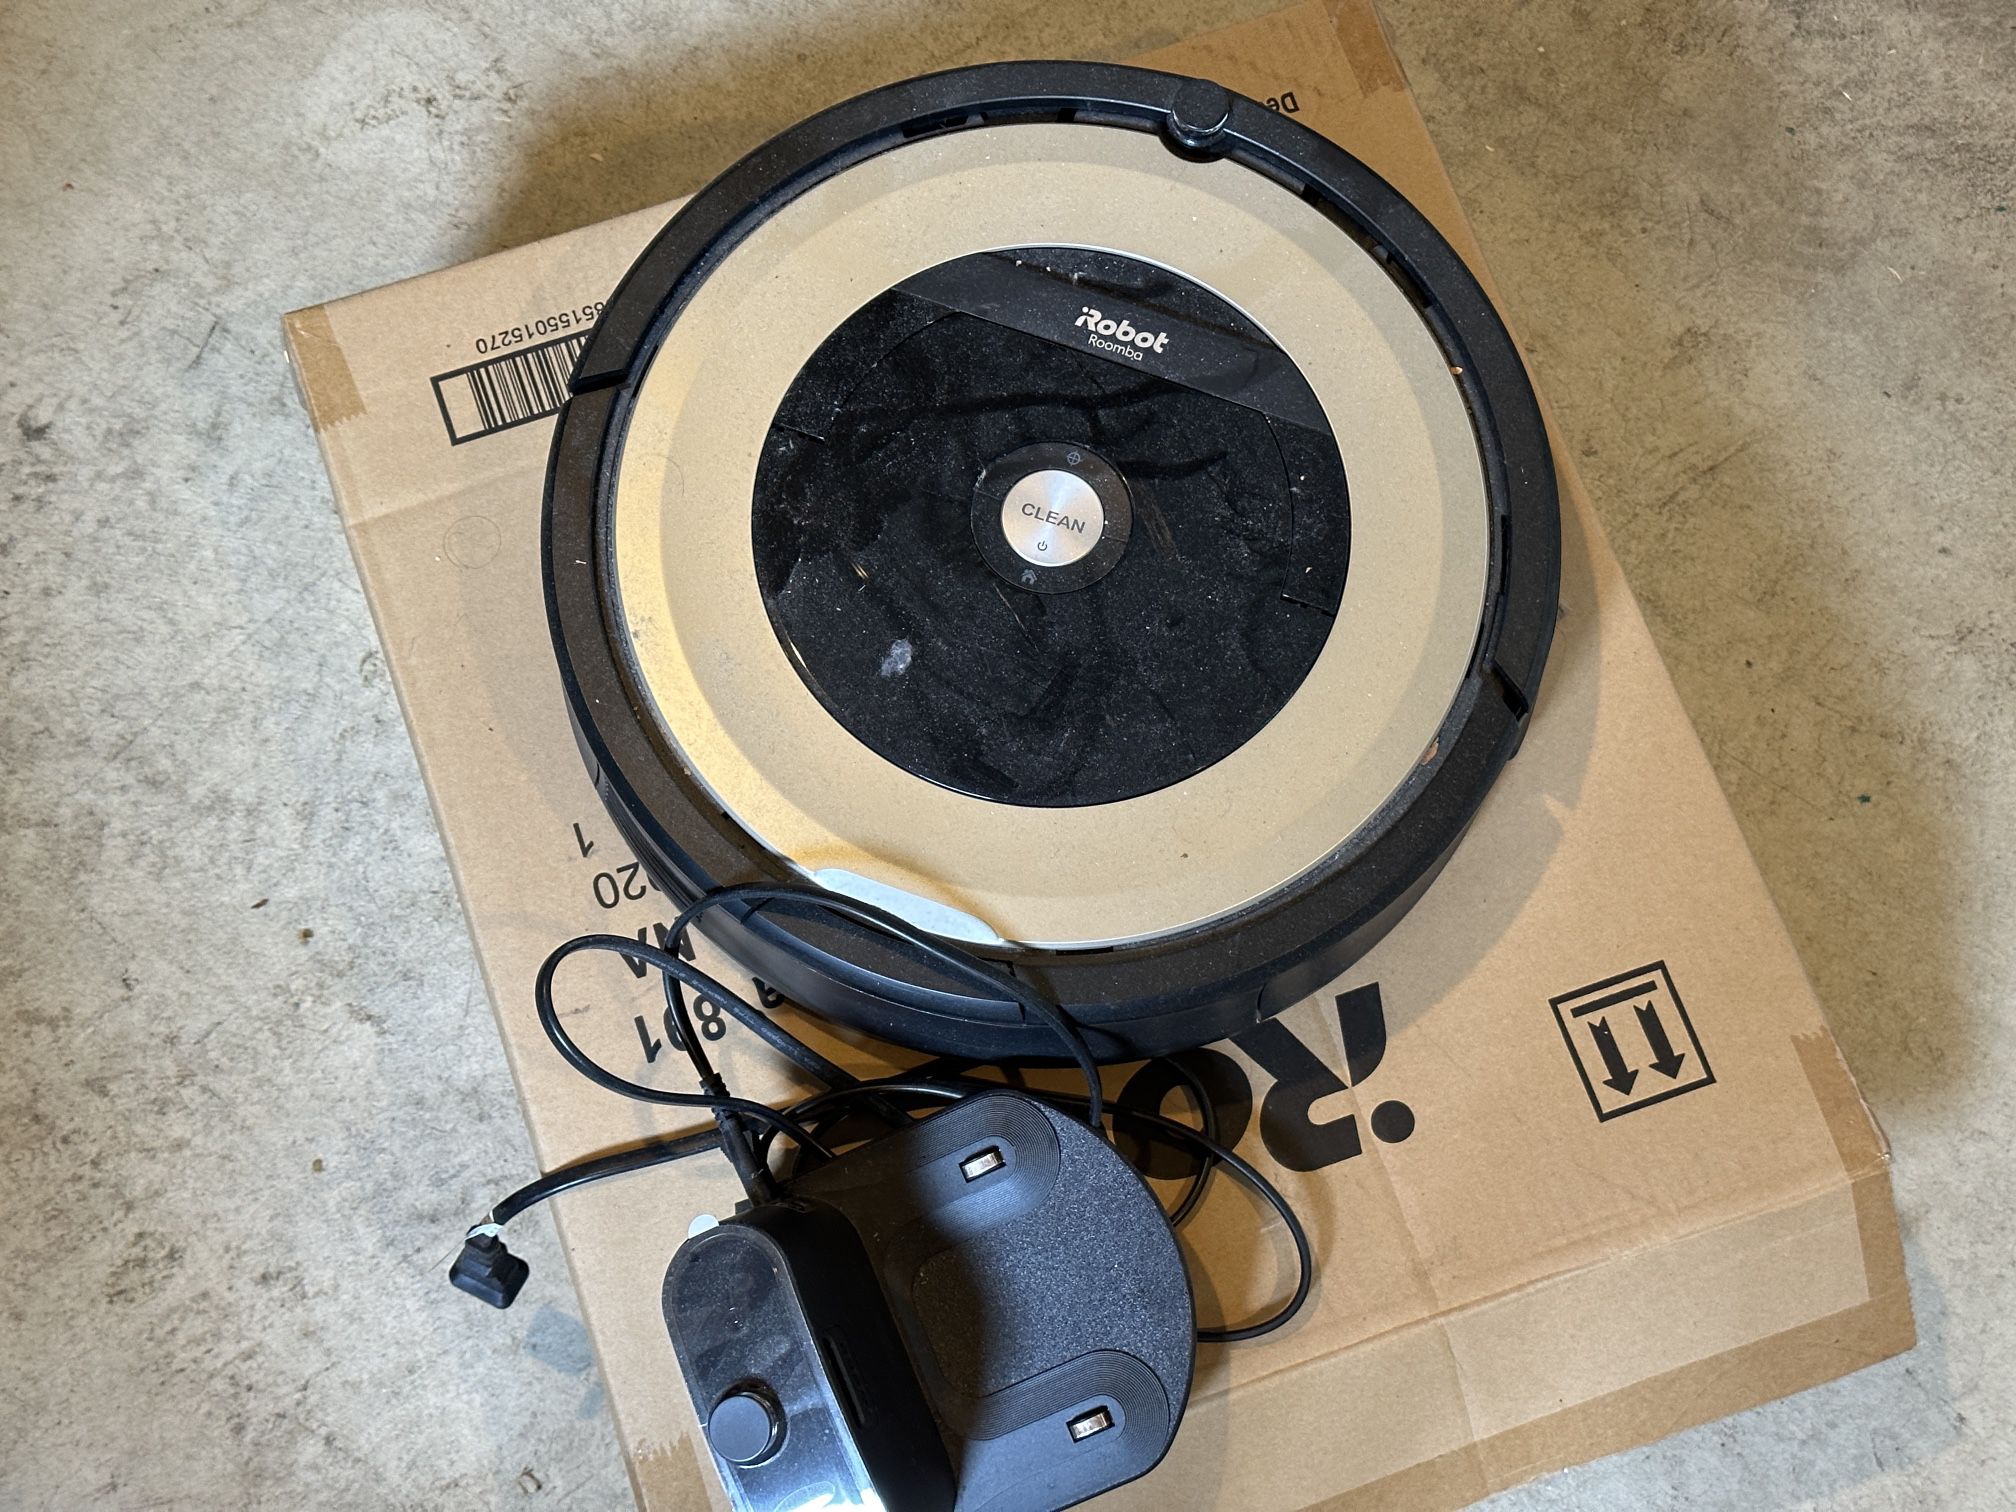 Berri Hammer bede iRobot Roomba 891 Smart Vacuum Robot for Sale in Northbrook, IL - OfferUp